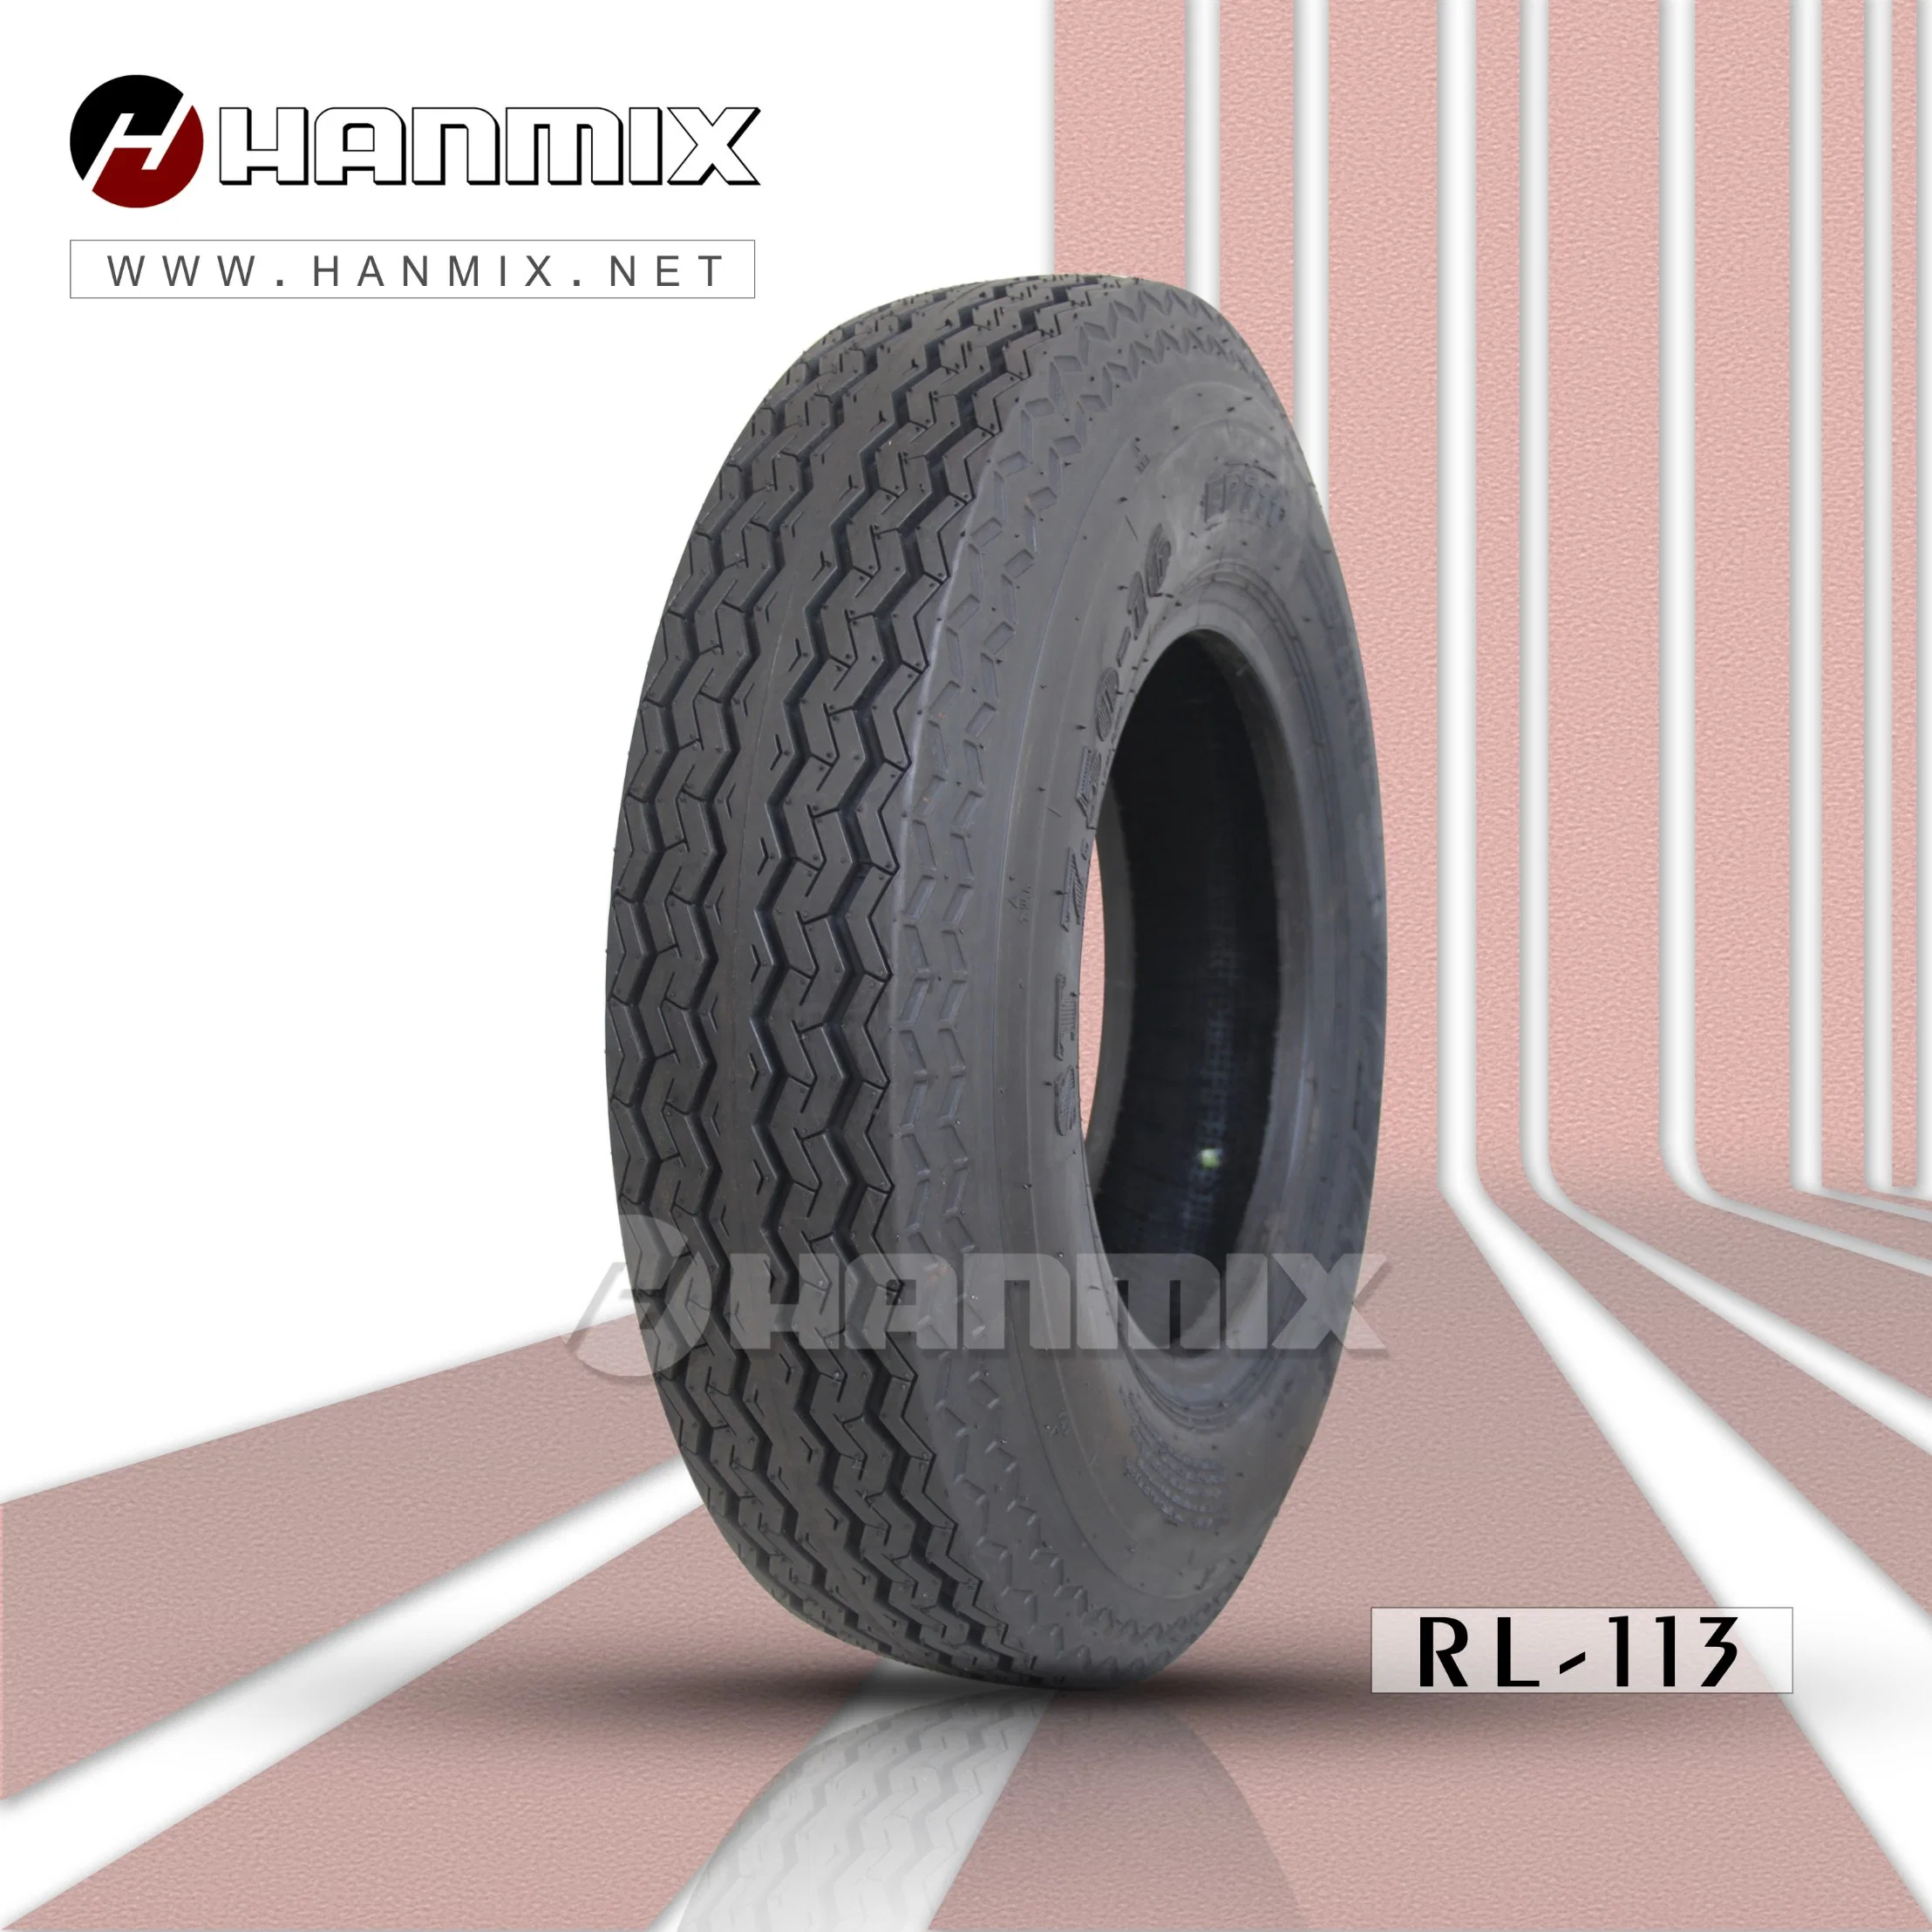 Hanmix TBB шины, Давление воздуха в шинах передних сиденьях, промышленной добычи тяжелых шины Шина легкого грузовика песок 700-15 шин 750-16 TBR диагональных шин погрузчика давление в шинах